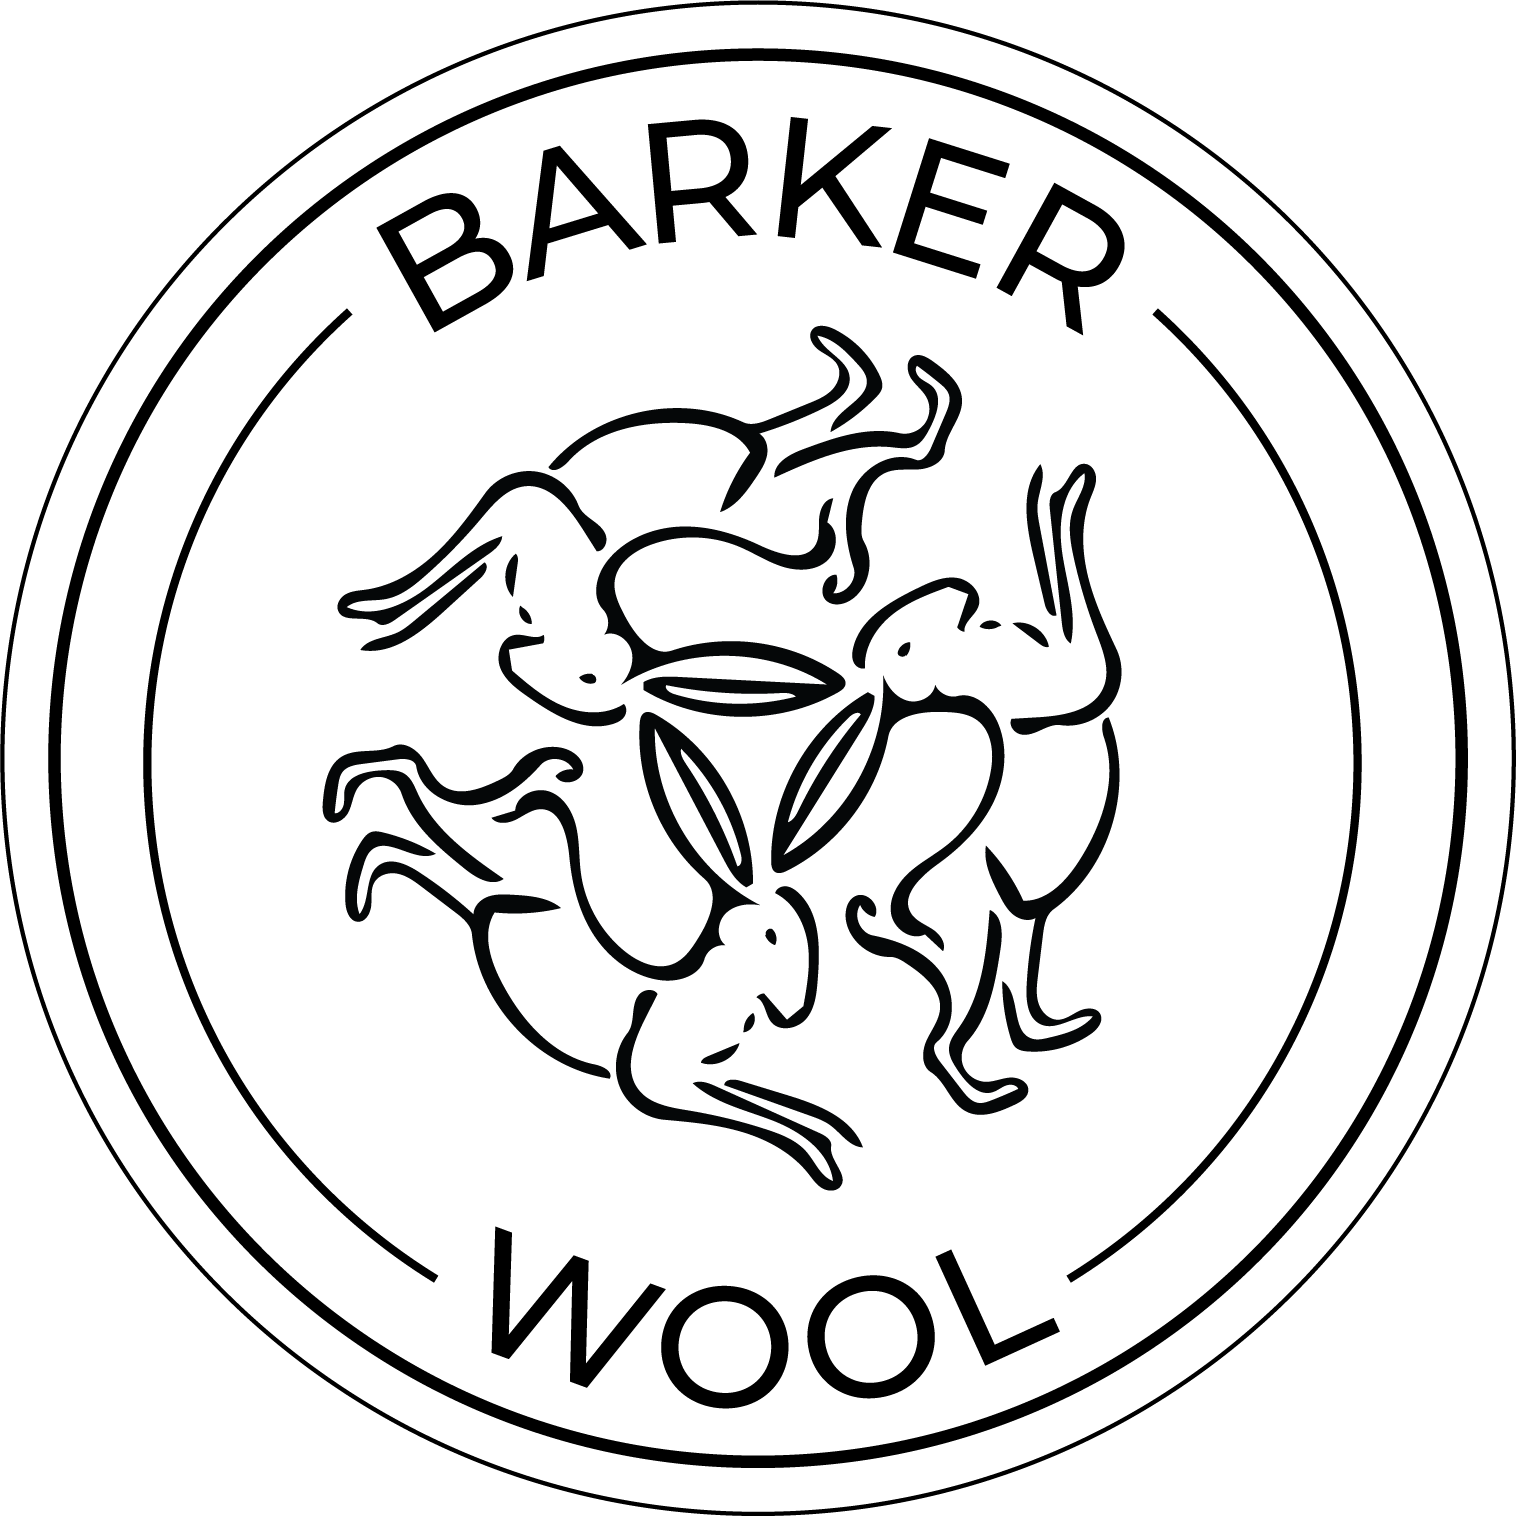 Barker Wool